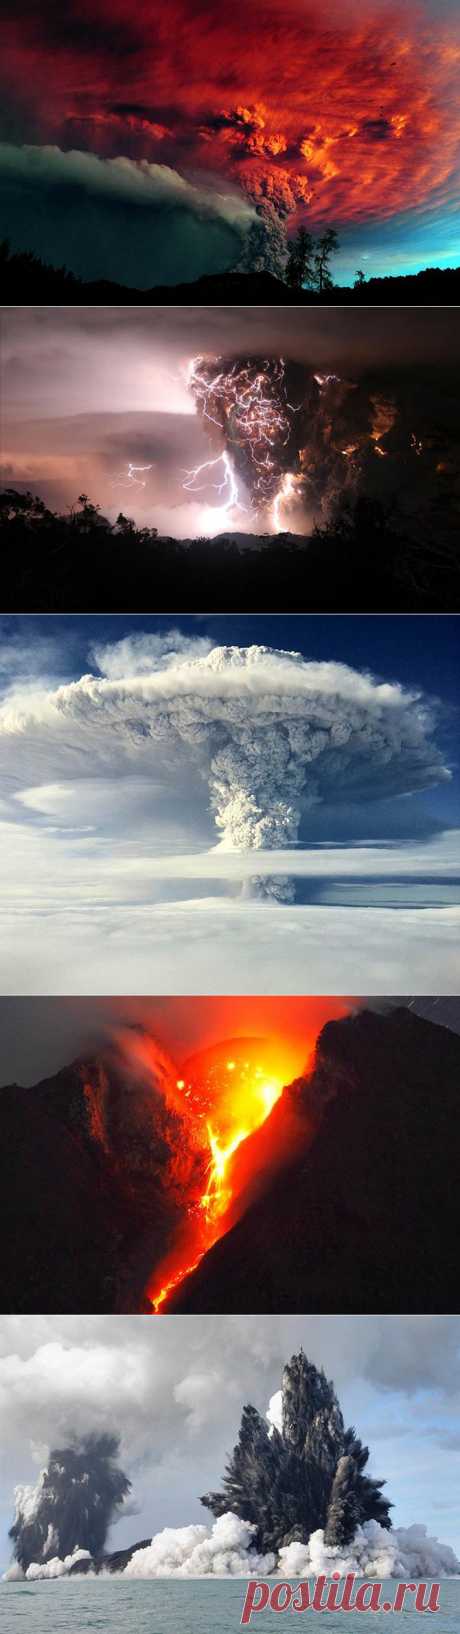 Невероятные фотографии извержения вулканов.